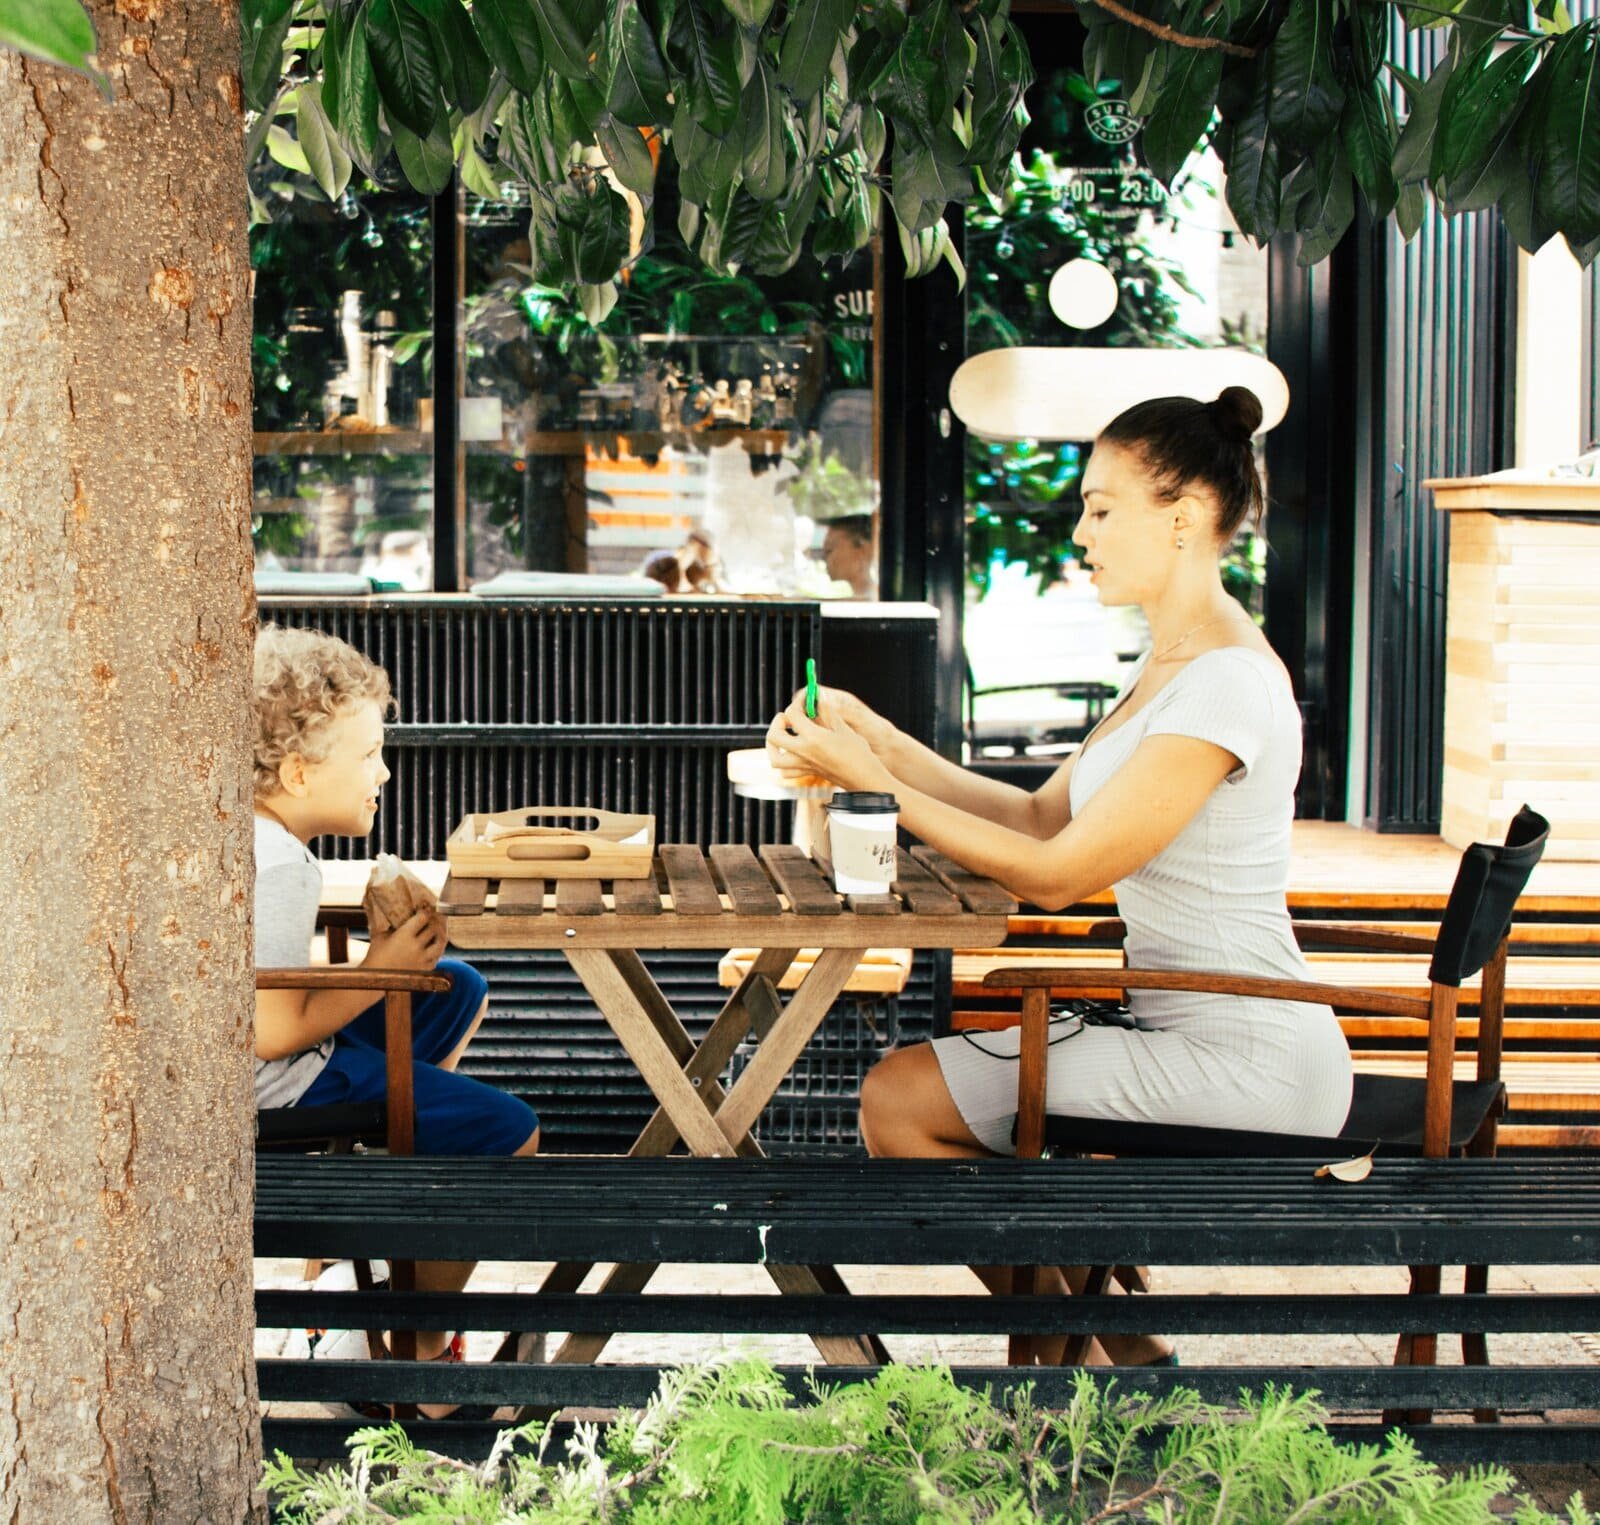 Mulher e uma criança sentados em uma mesa de madeira tomando café.